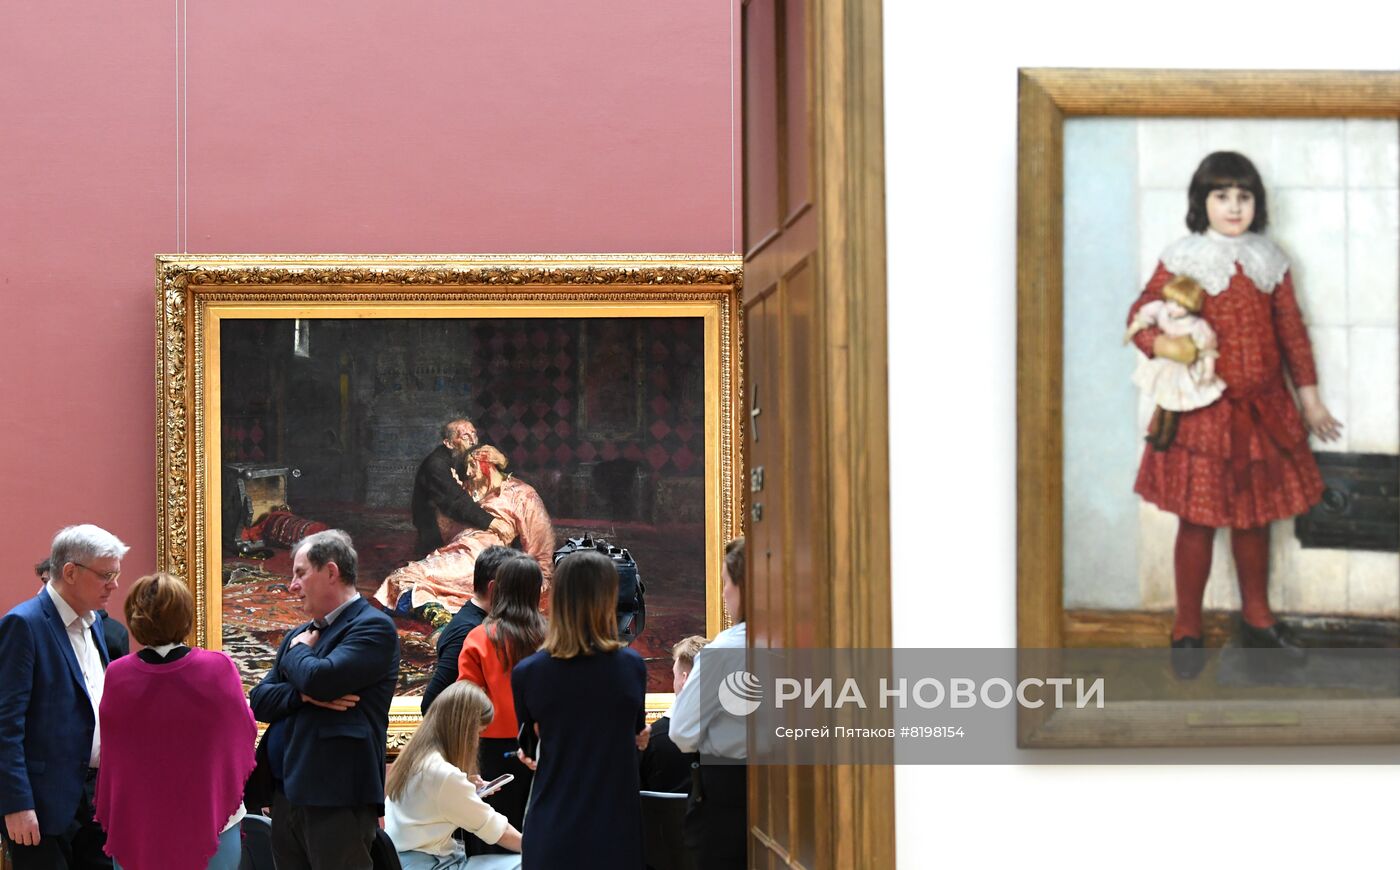 Презентация картины Репина "Иван Грозный и сын его Иван" после реставрации